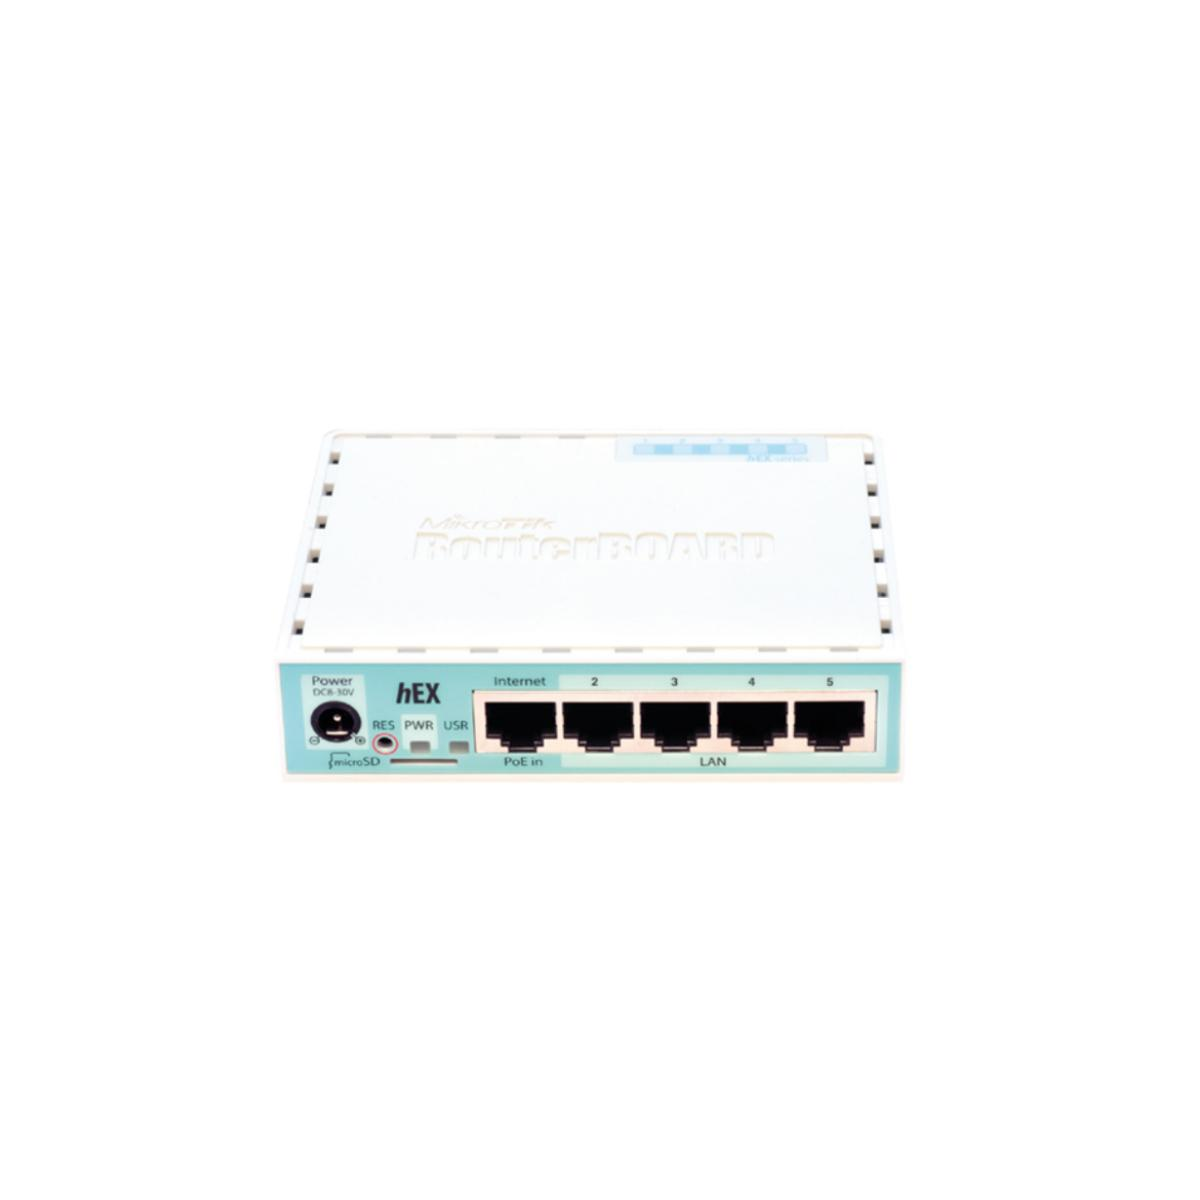 RB750Gr3 MIKROTIK Router